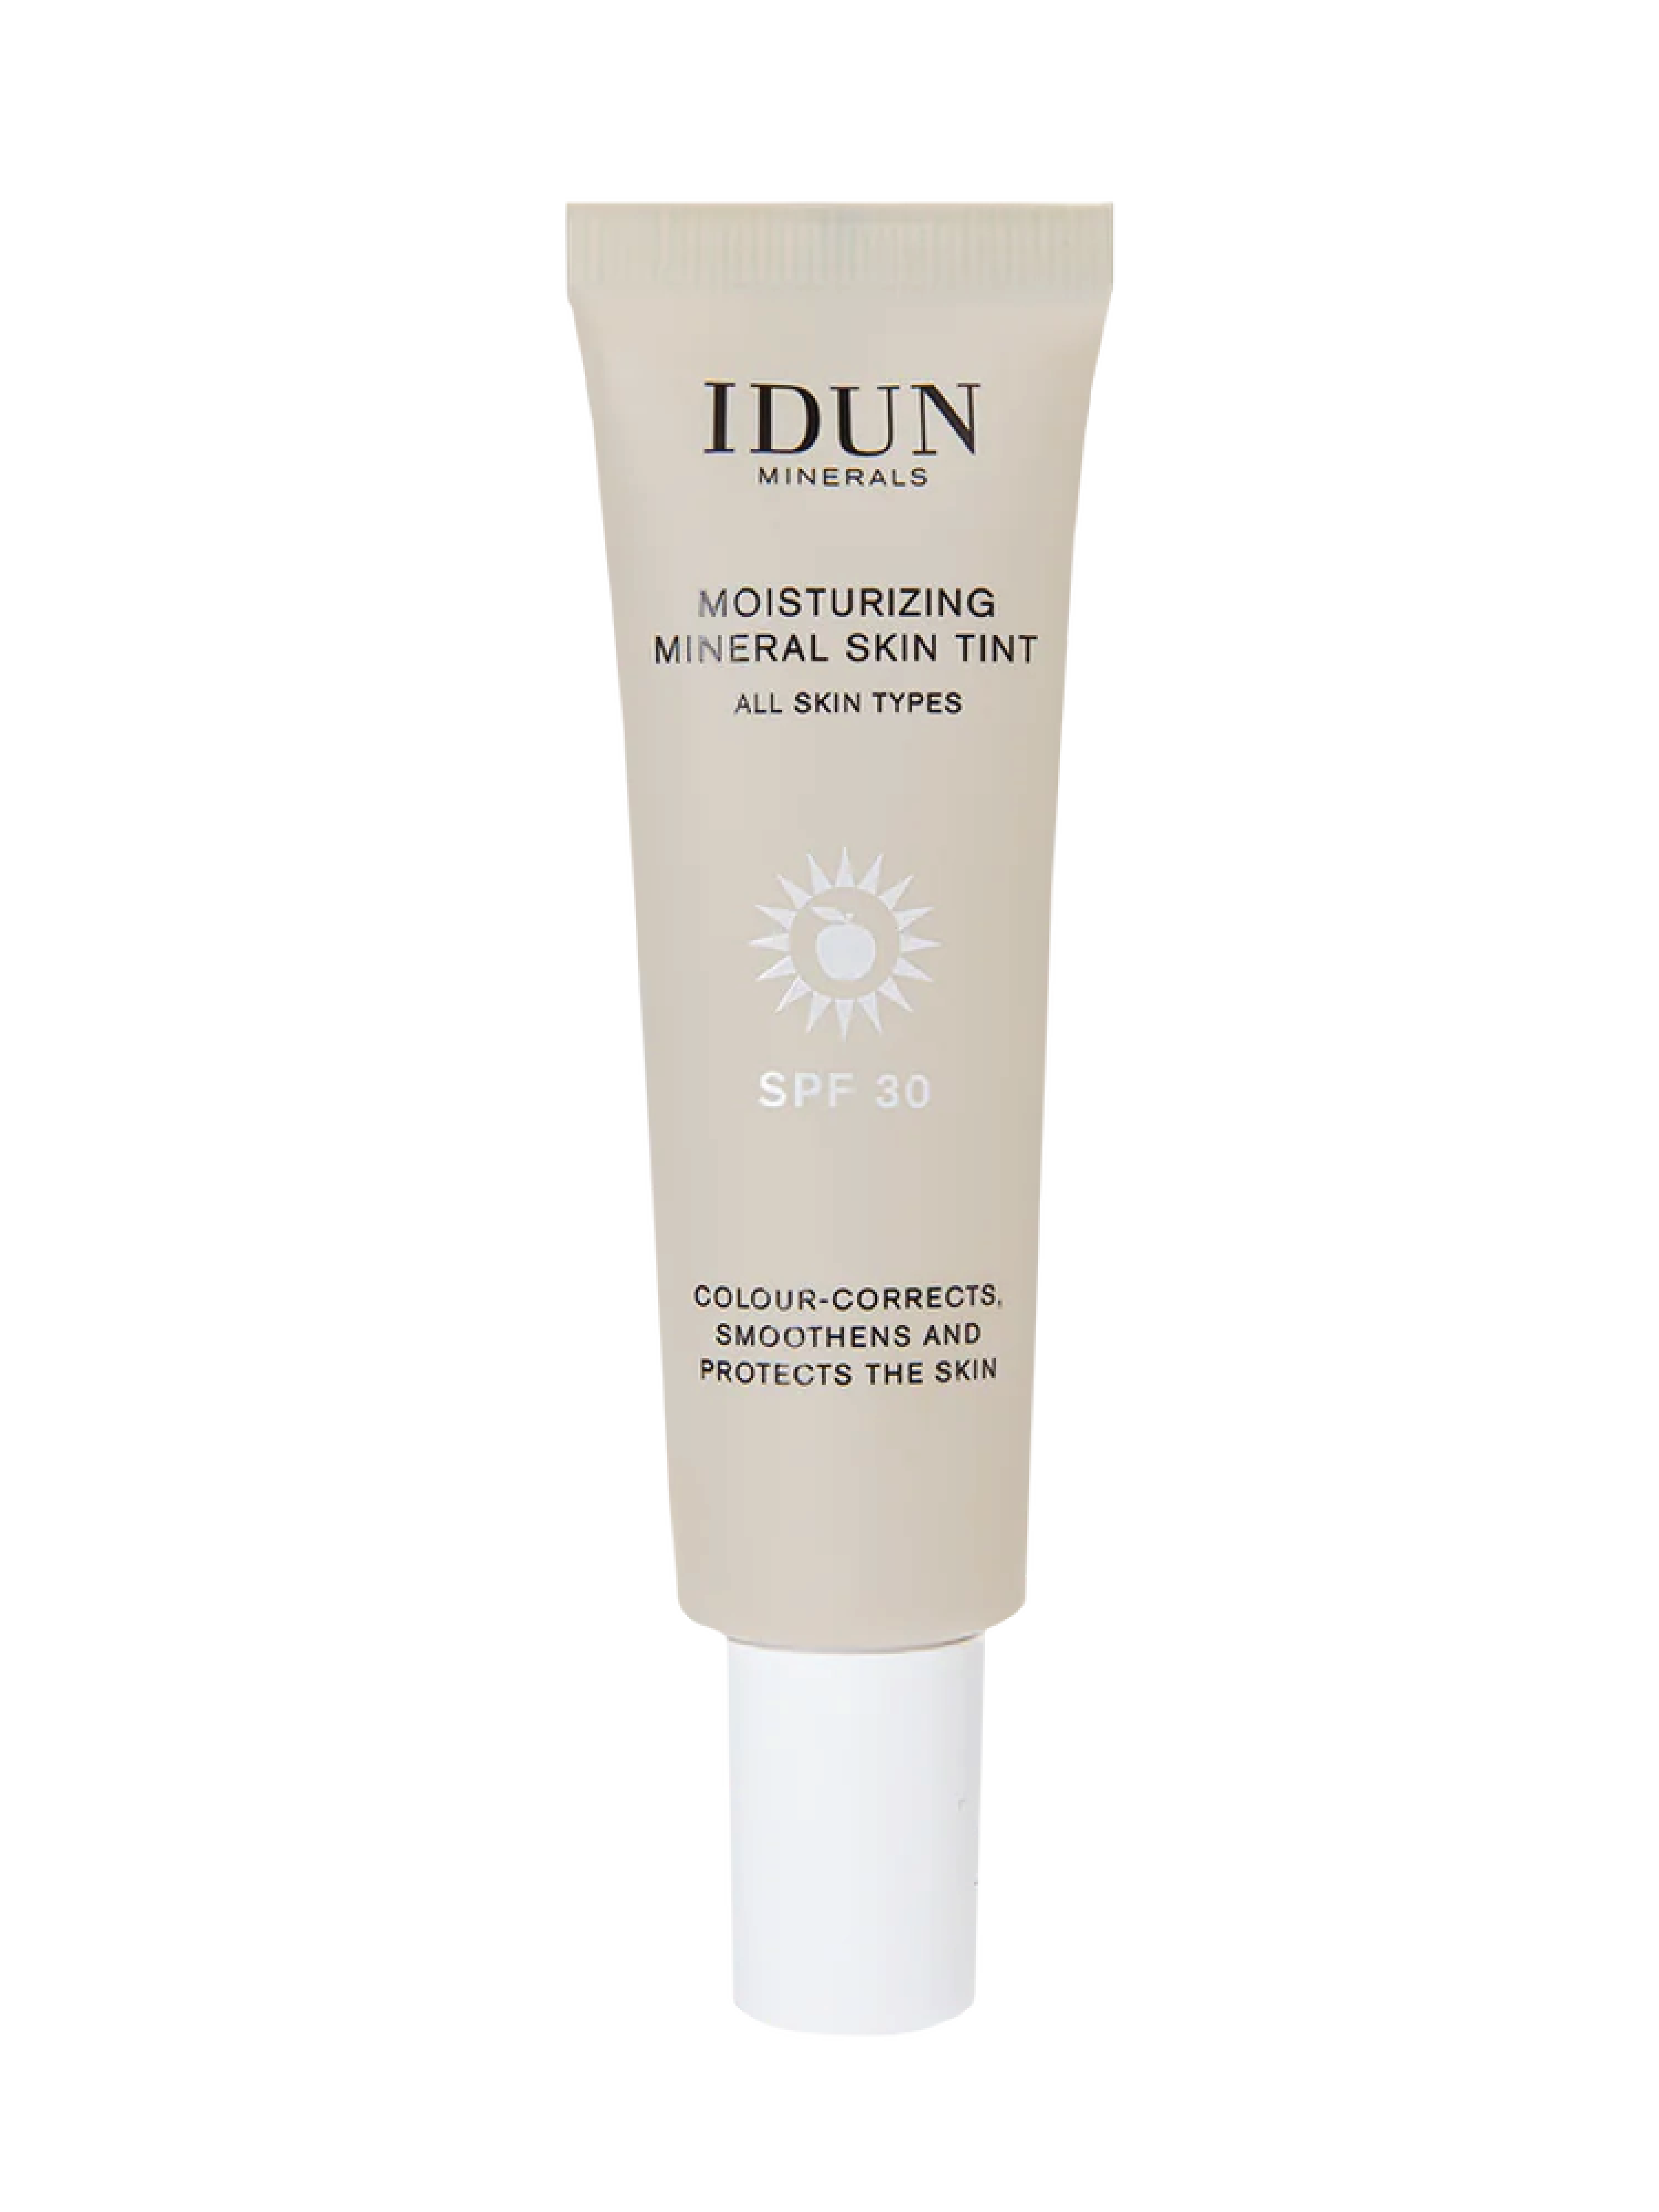 IDUN Minerals Moisturizing Mineral Skin Tint SPF 30, Tan, 27 ml